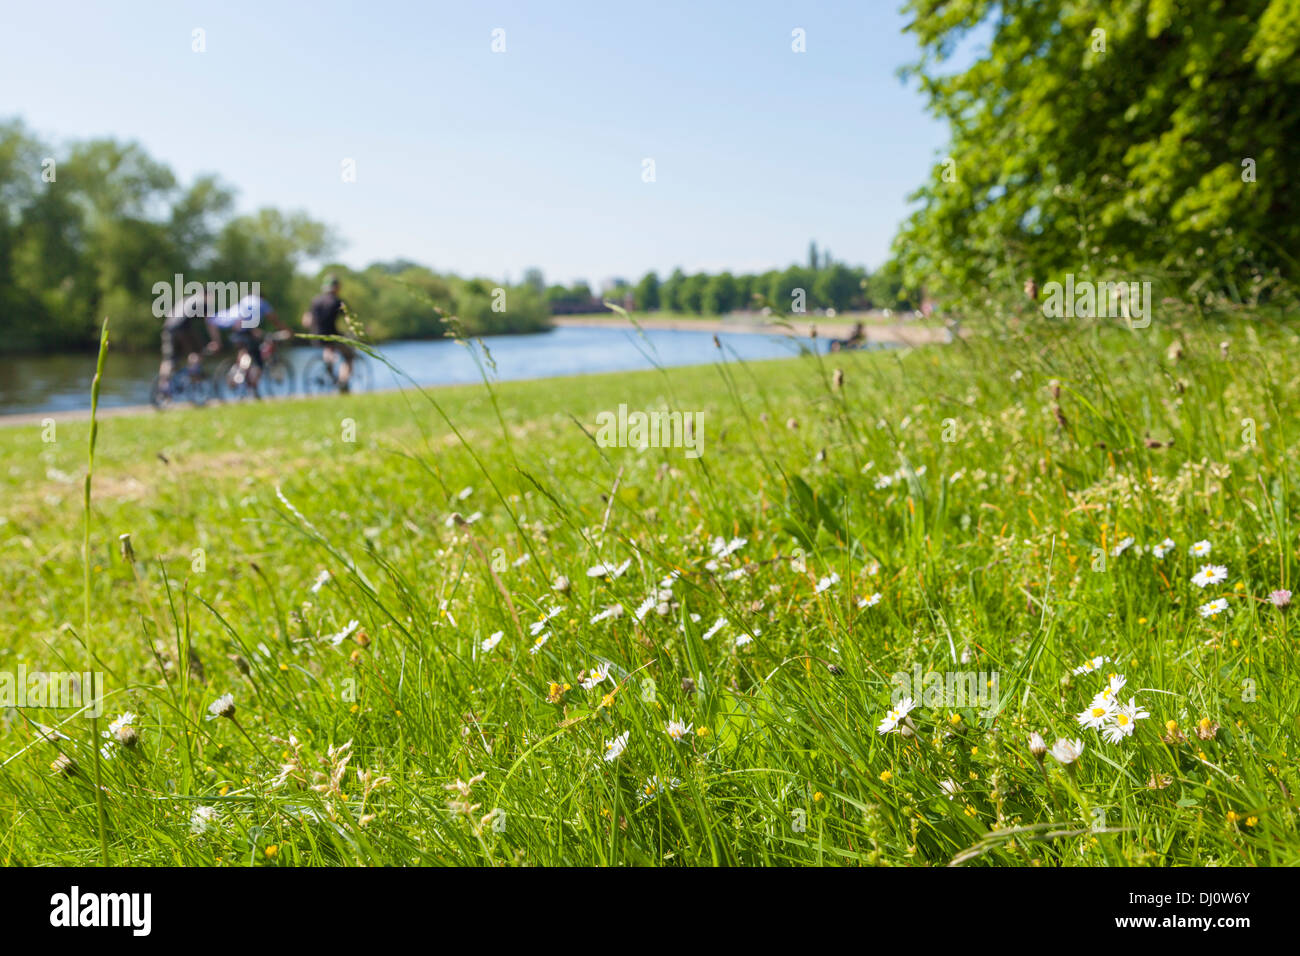 Gänseblümchen und Gras mit einem unscharf Hintergrund von Menschen und Bäume am Ufer des Flusses Trent auf einem englischen Sommer Tag. Nottingham, England, Großbritannien Stockfoto